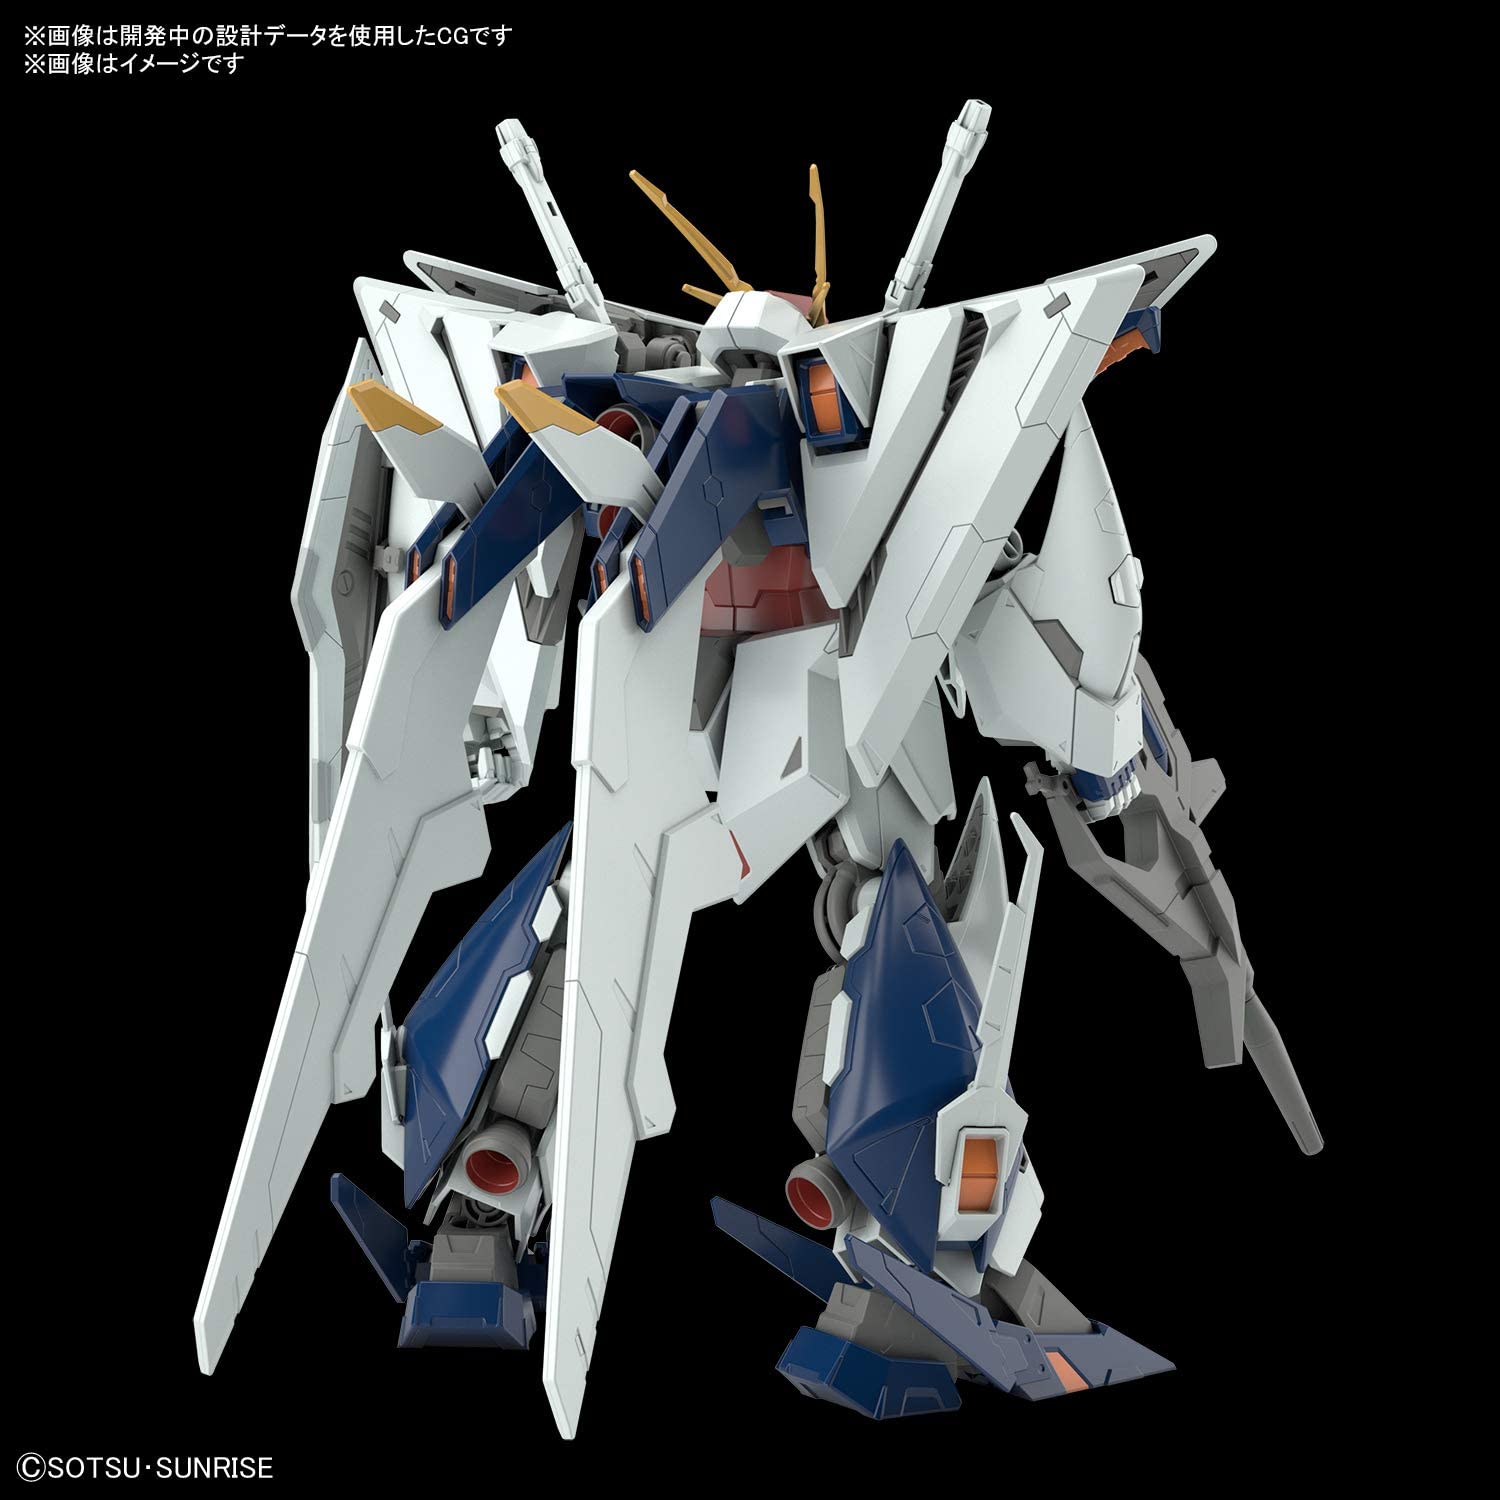 HGUC238 Xi Gundam (HGUC)